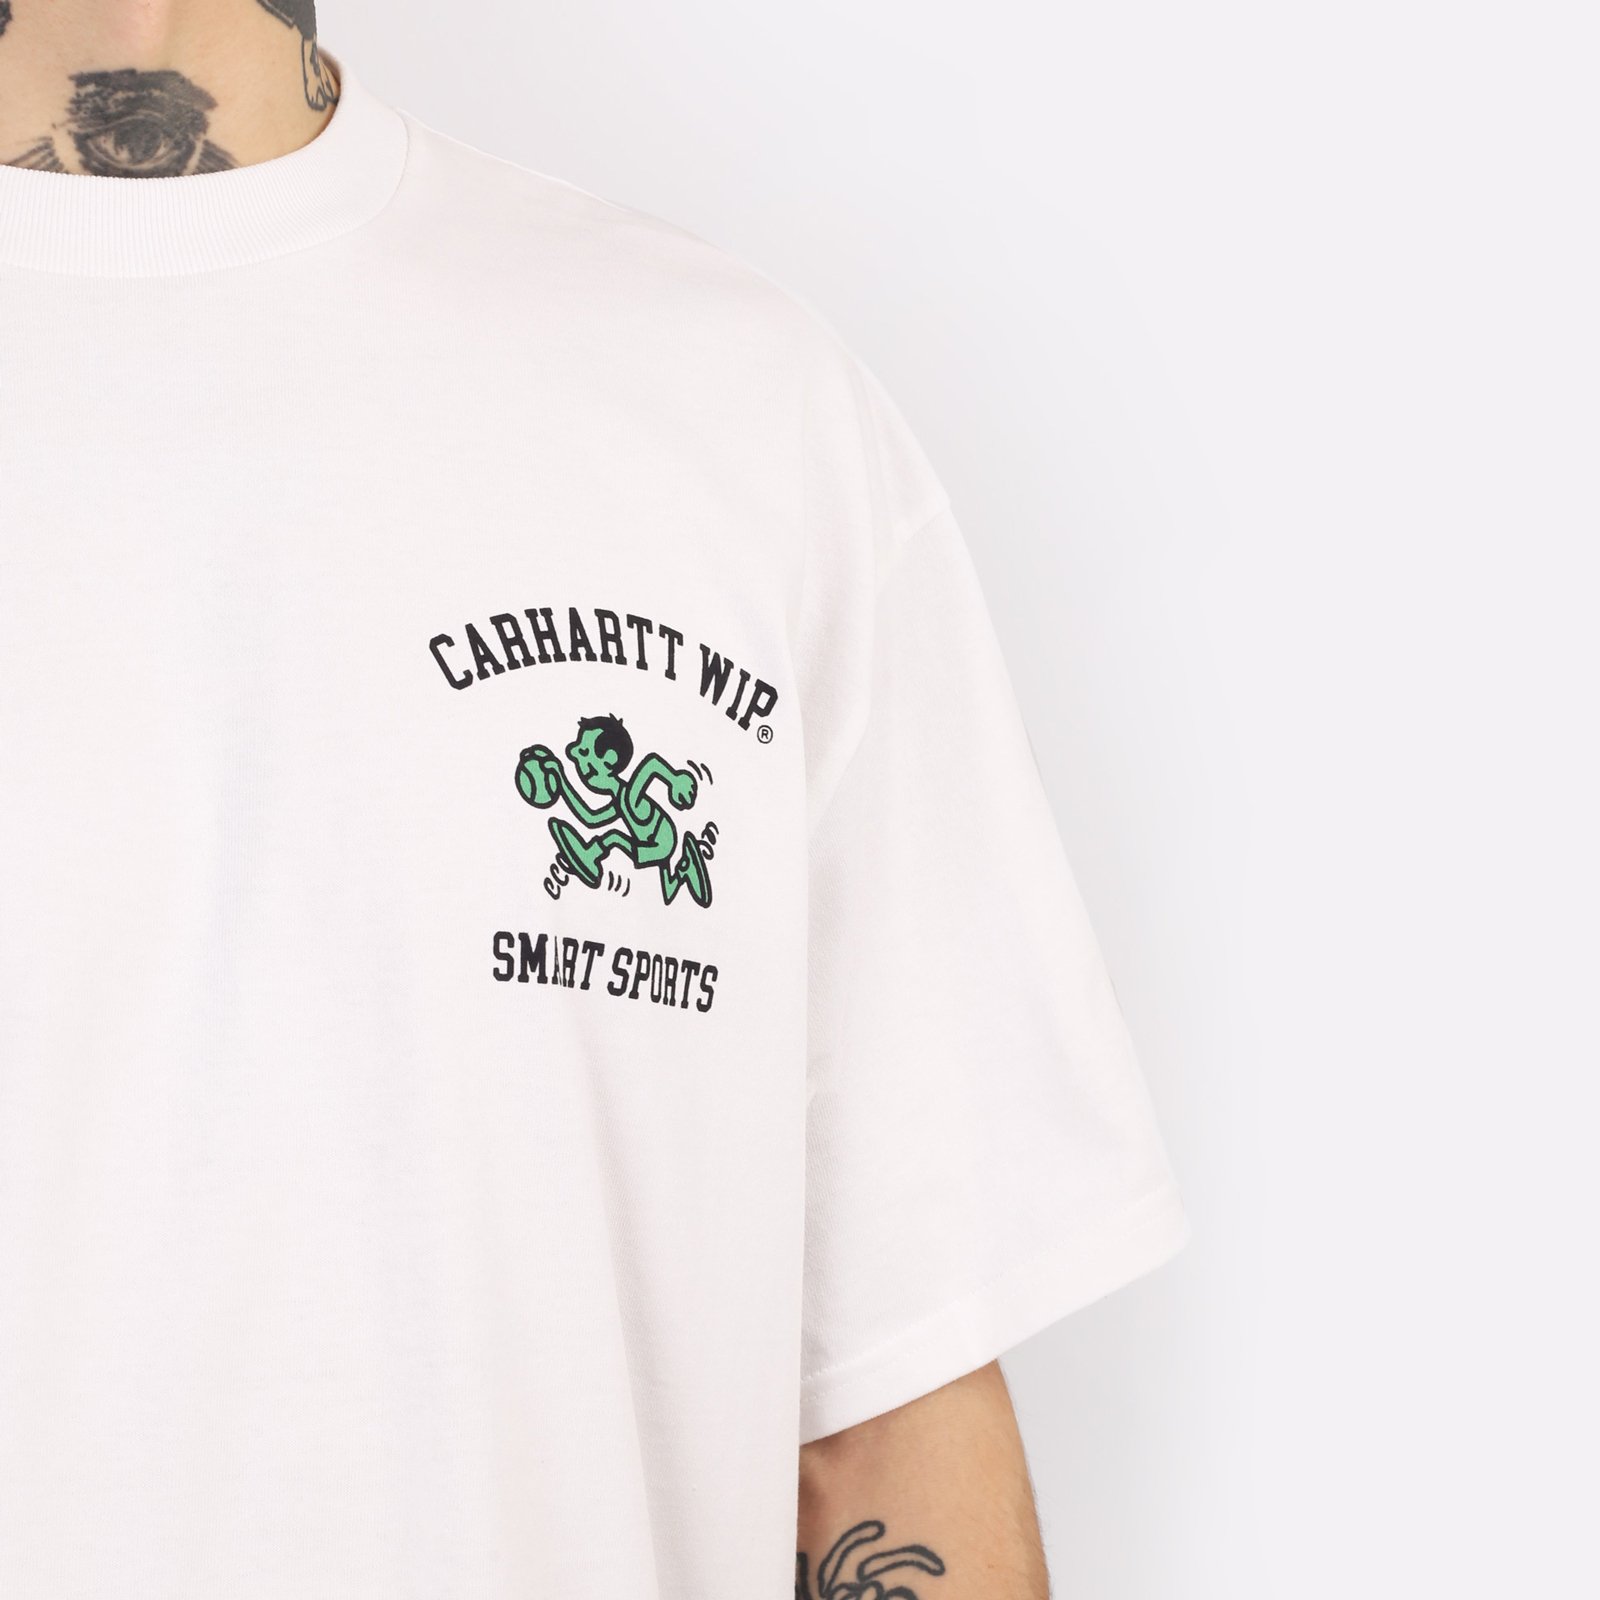 мужская футболка Carhartt WIP S/S Smart Sports T-Shirt  (I033121-white)  - цена, описание, фото 4